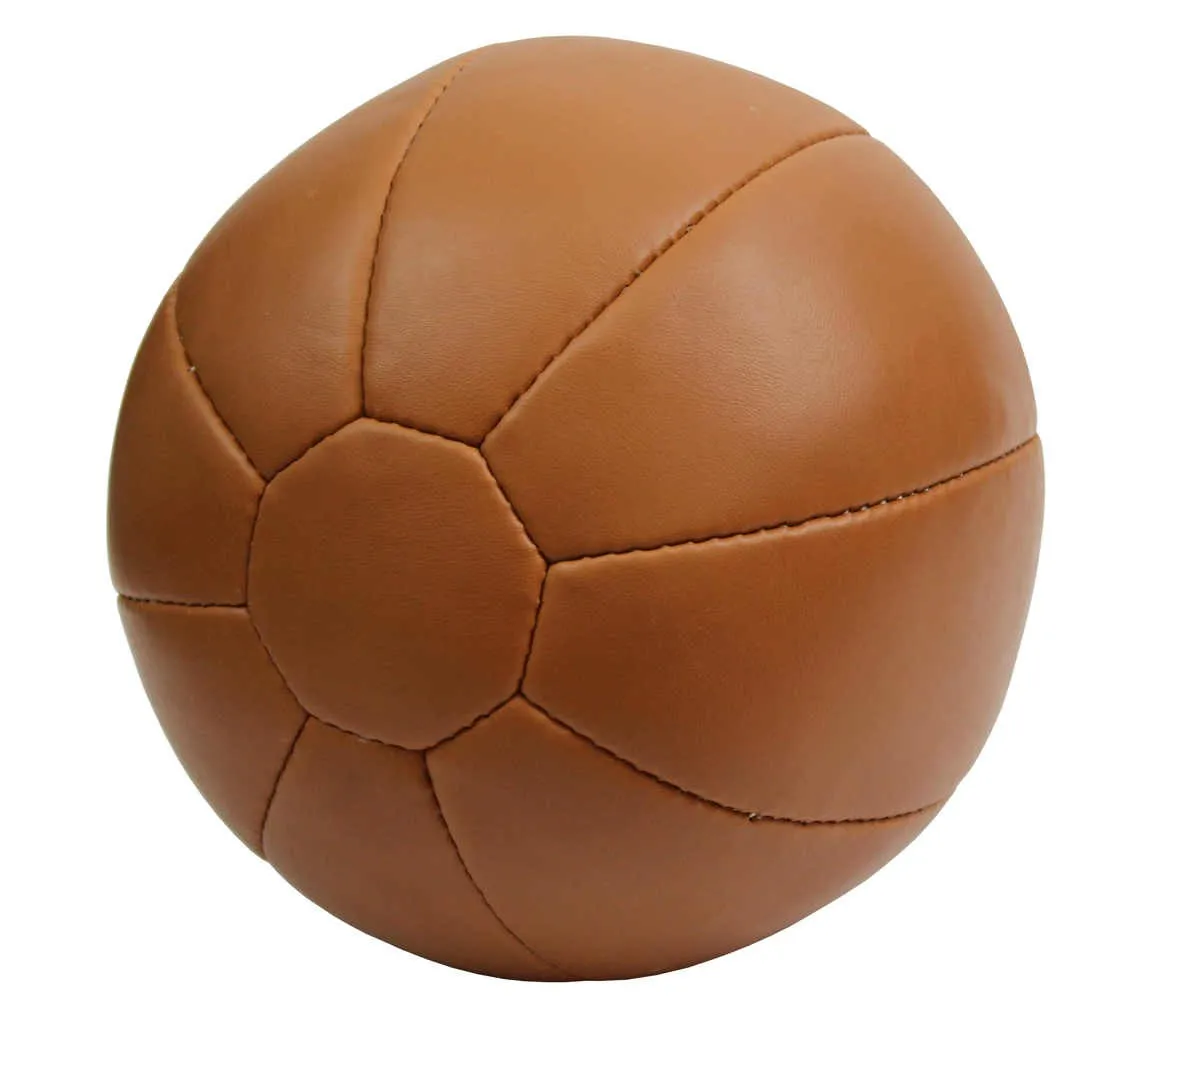 Medizinball 5 kg, 26 cm Kunstleder Slamball